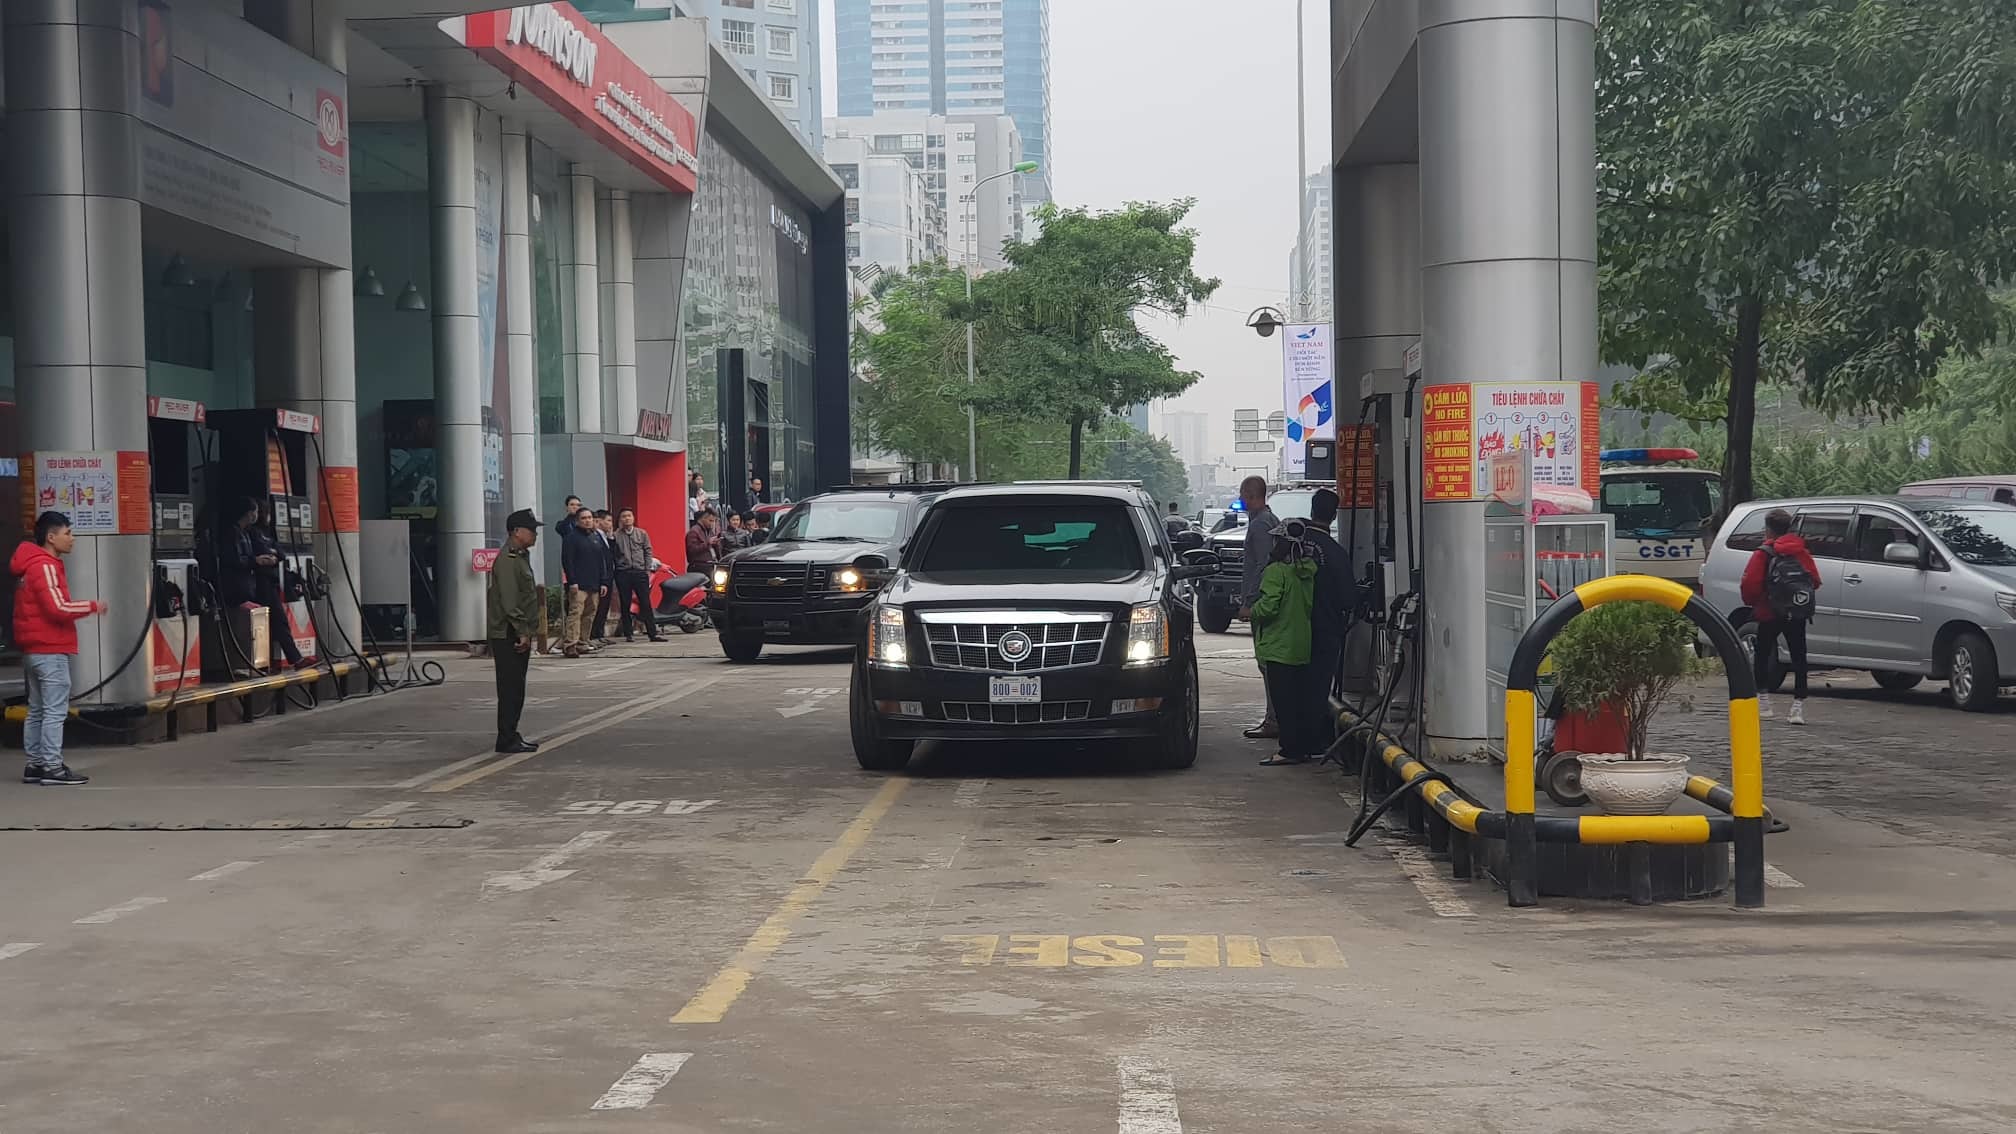 Xe ‘quái thú’ của Tổng thống Donald Trump lăn bánh trên đường Hà Nội